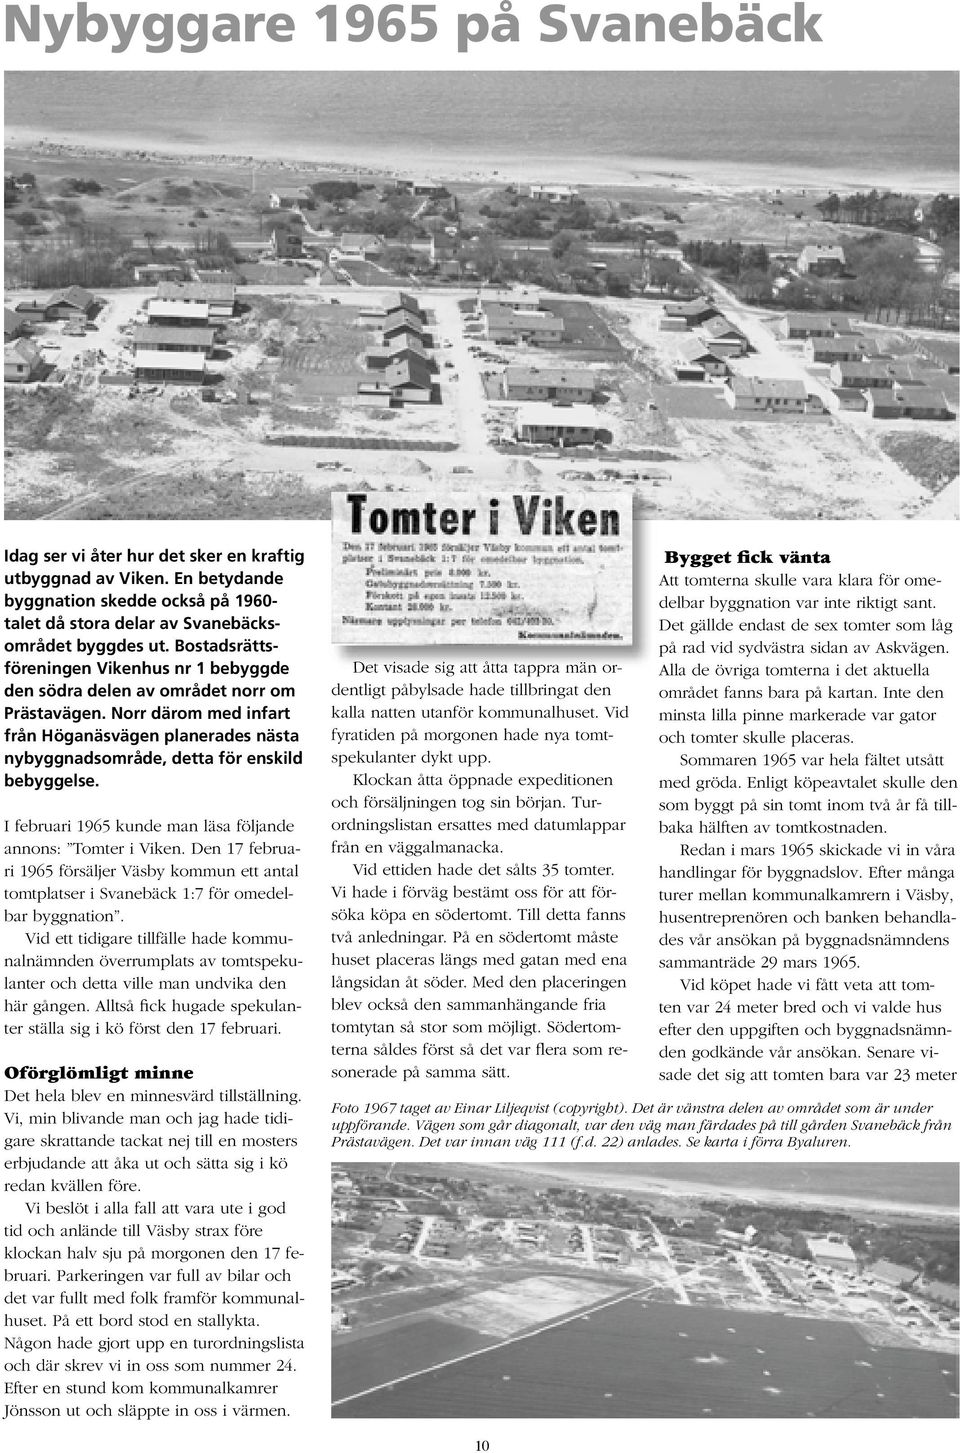 I februari 1965 kunde man läsa följande annons: Tomter i Viken. Den 17 februari 1965 försäljer Väsby kommun ett antal tomtplatser i Svanebäck 1:7 för omedelbar byggnation.